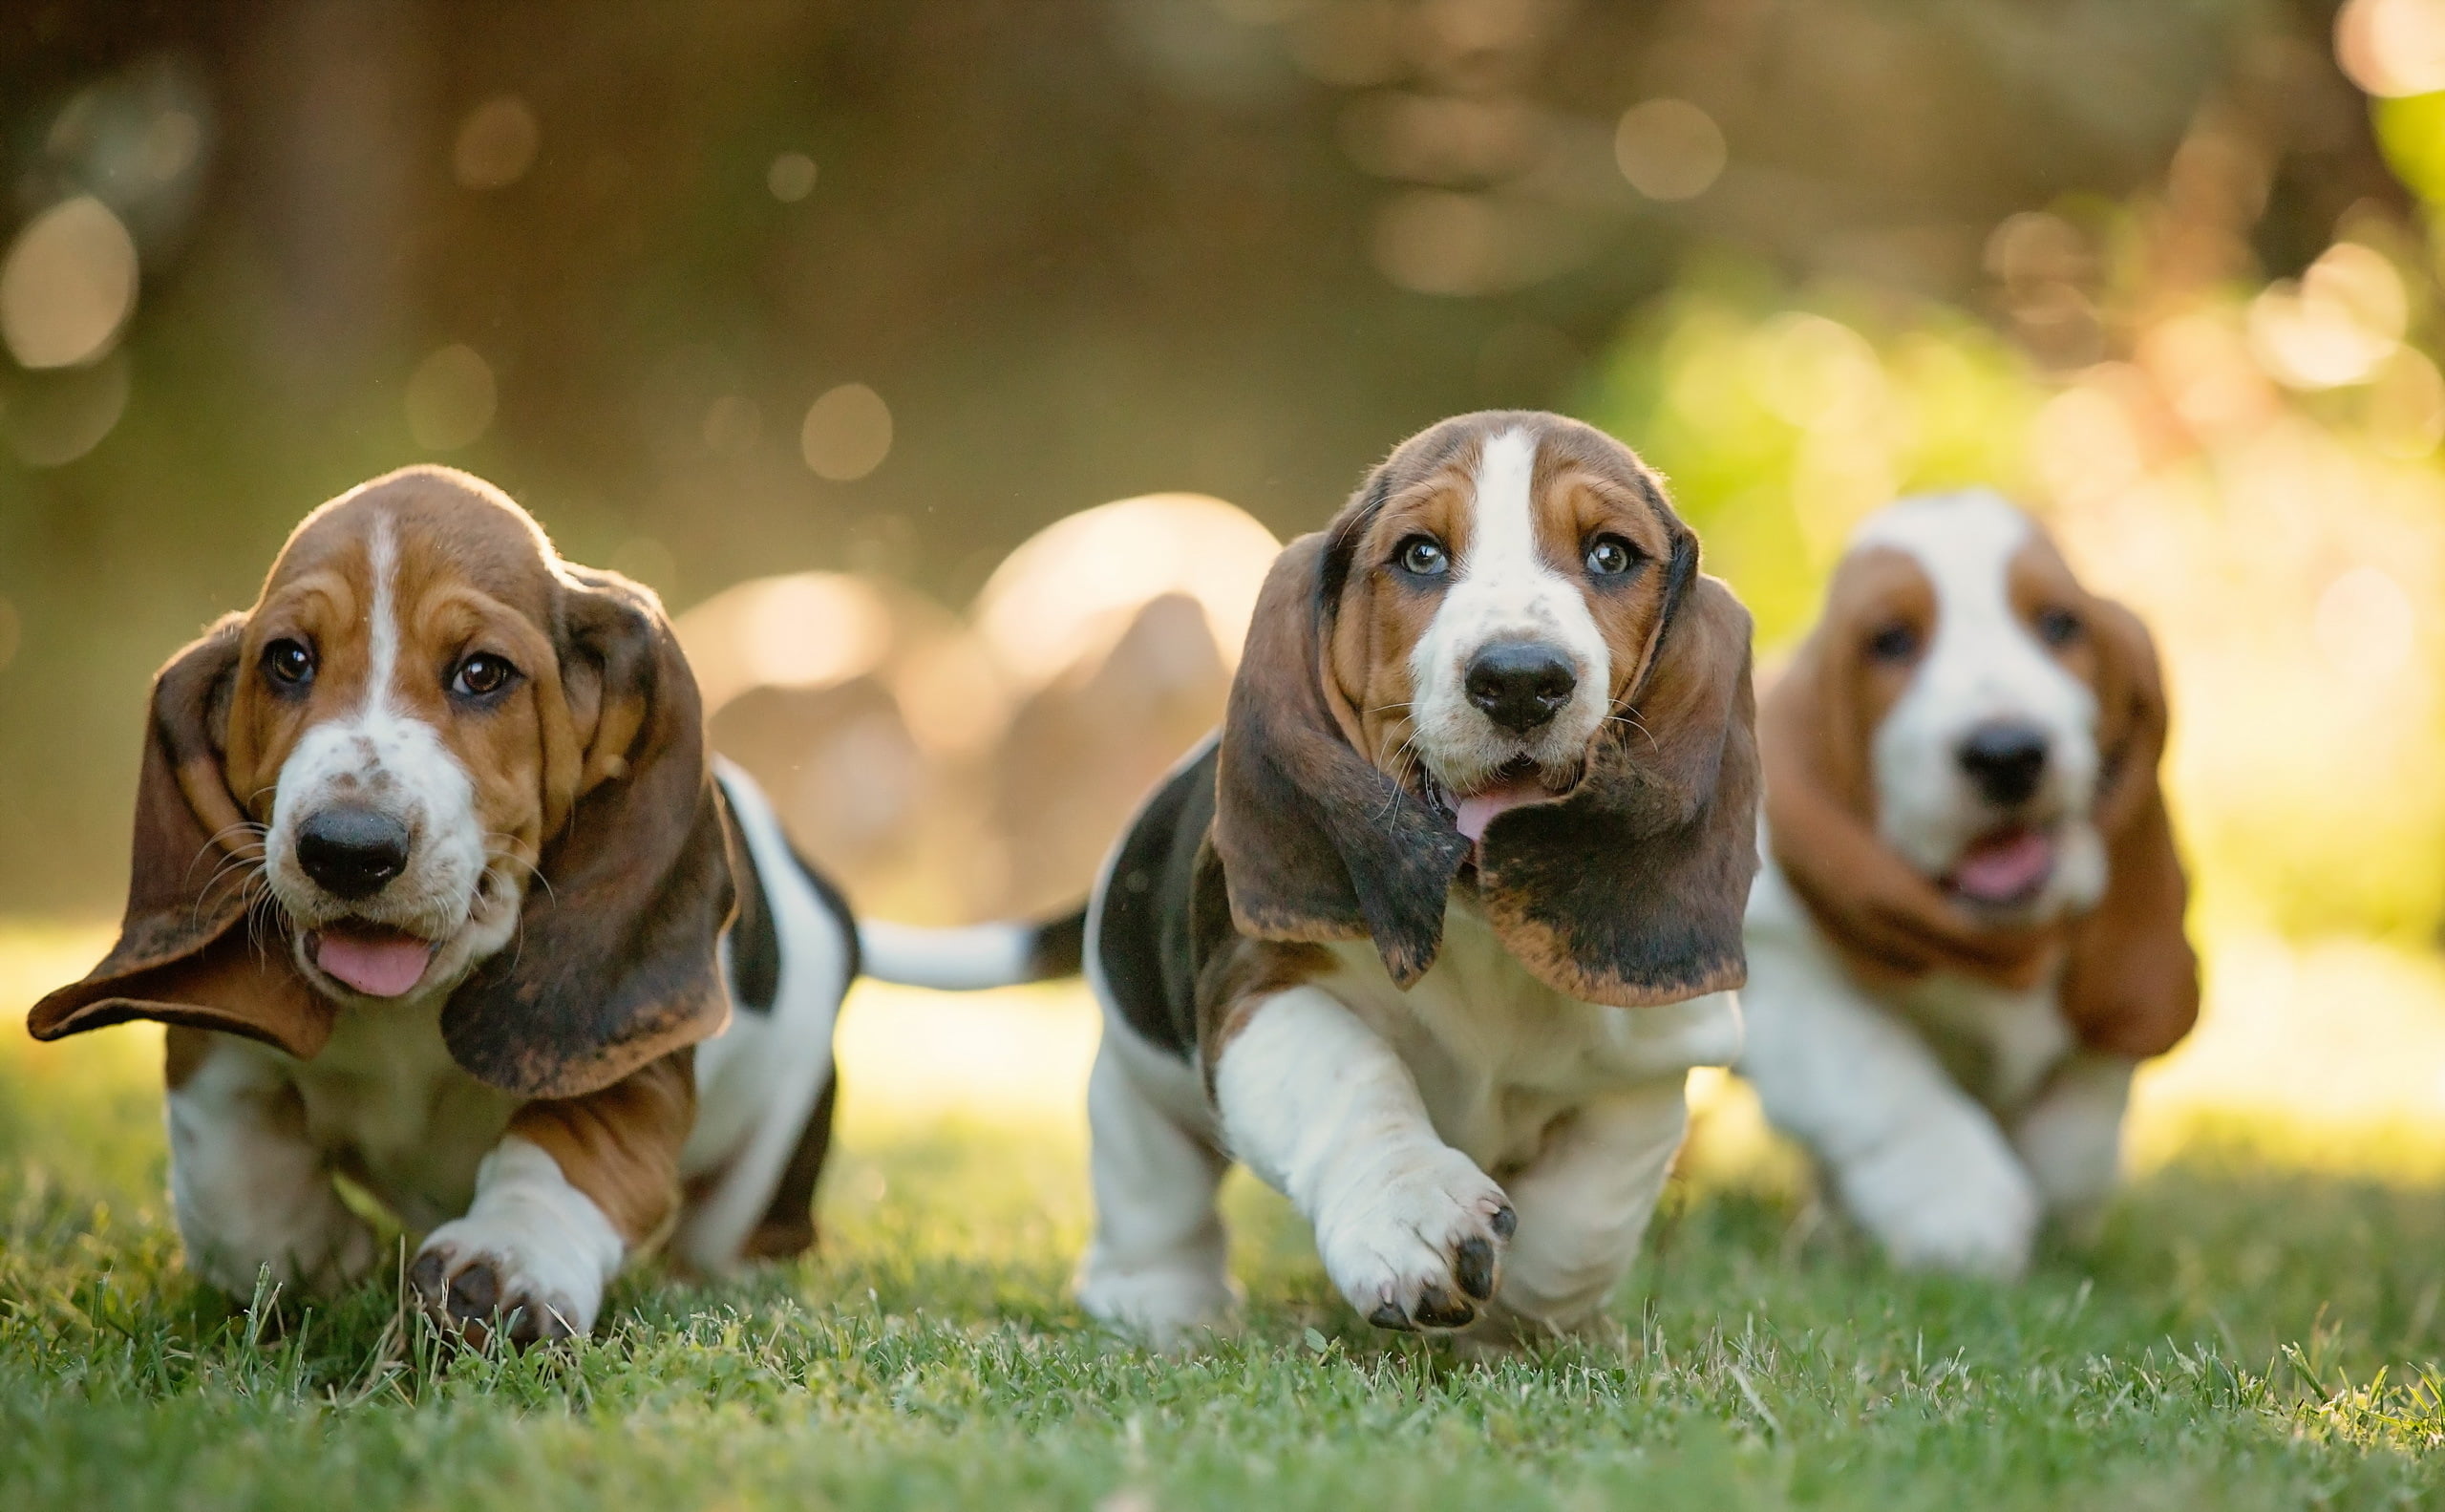 brown basset hound puppies, dachshund, dogs, grass, walk, pets